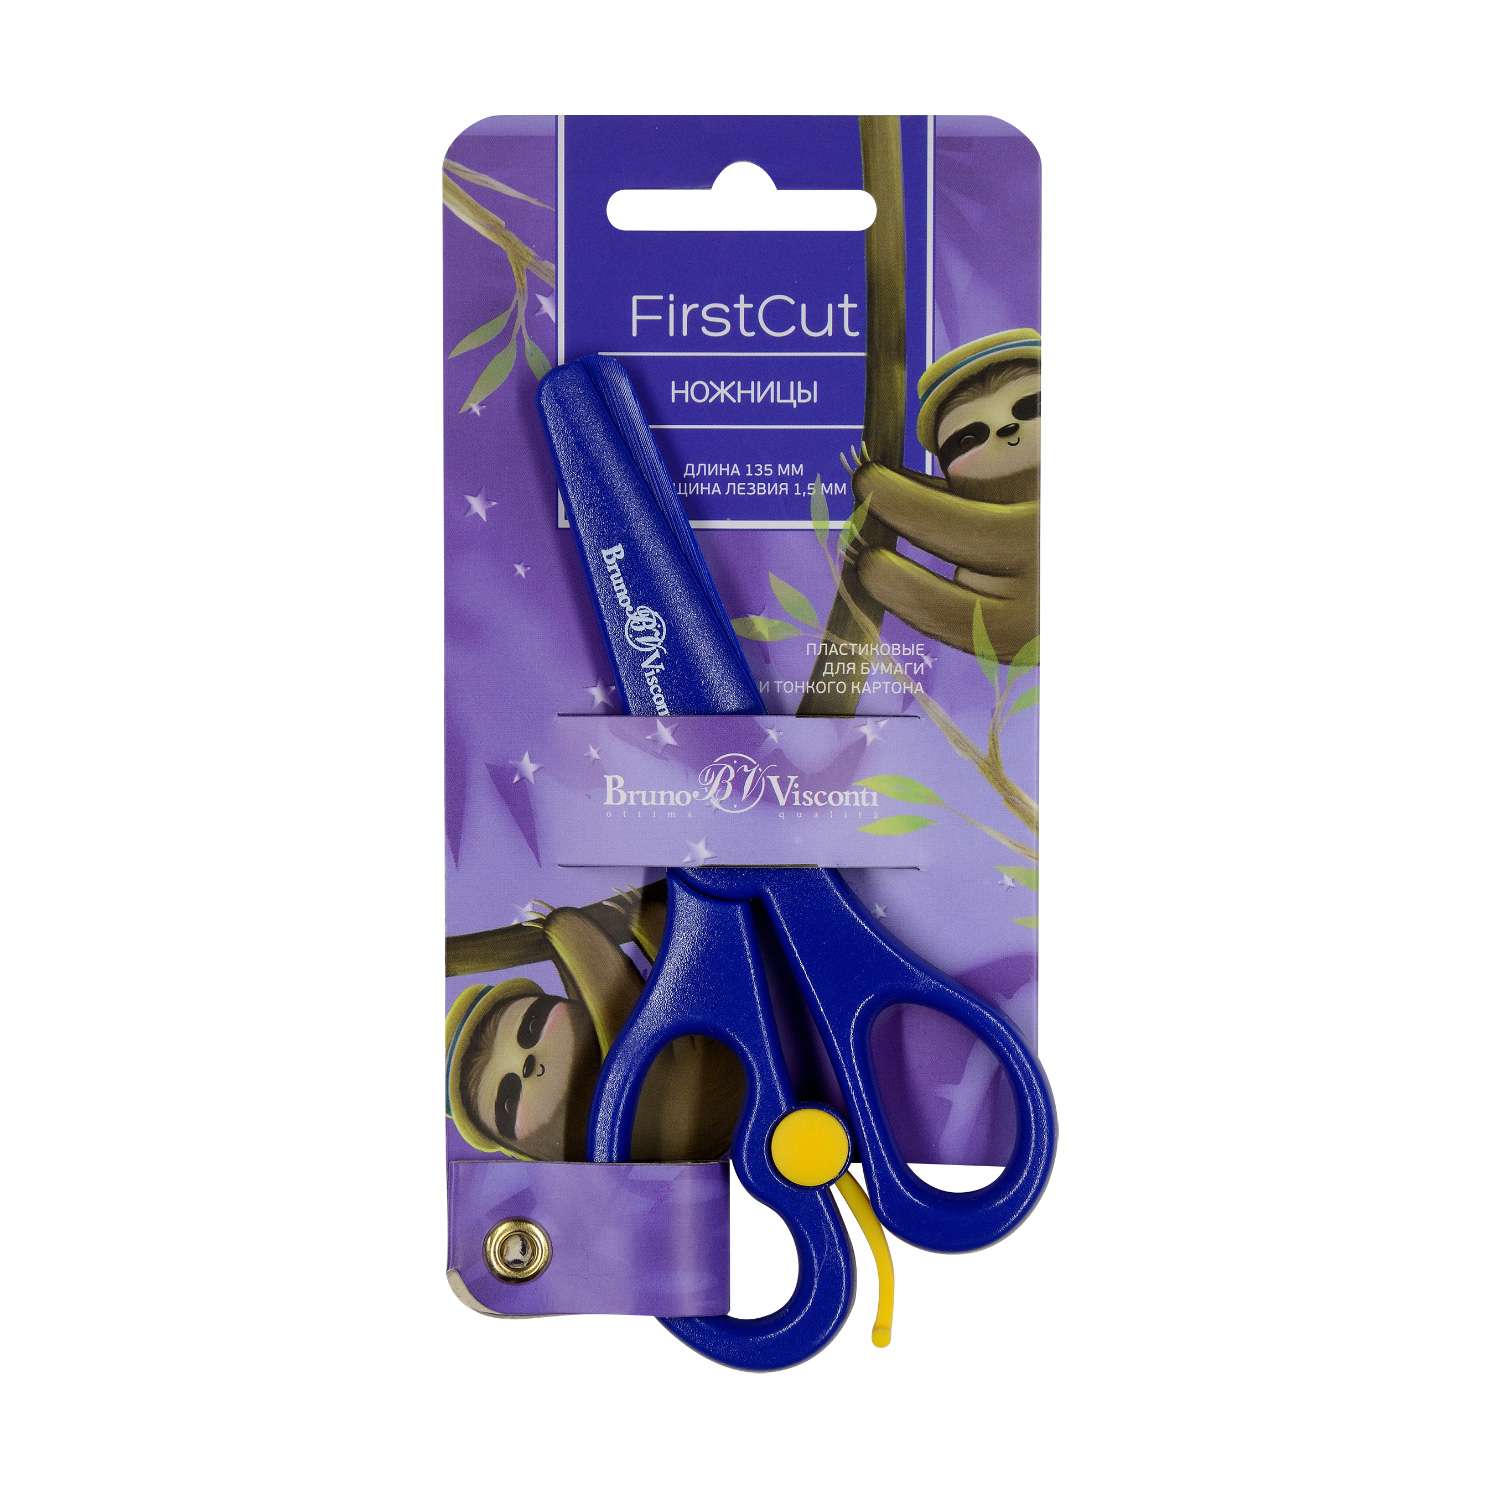 Ножницы детские Bruno Visconti FirstCut 135 мм пластиковые лезвия и ручки - фото 1